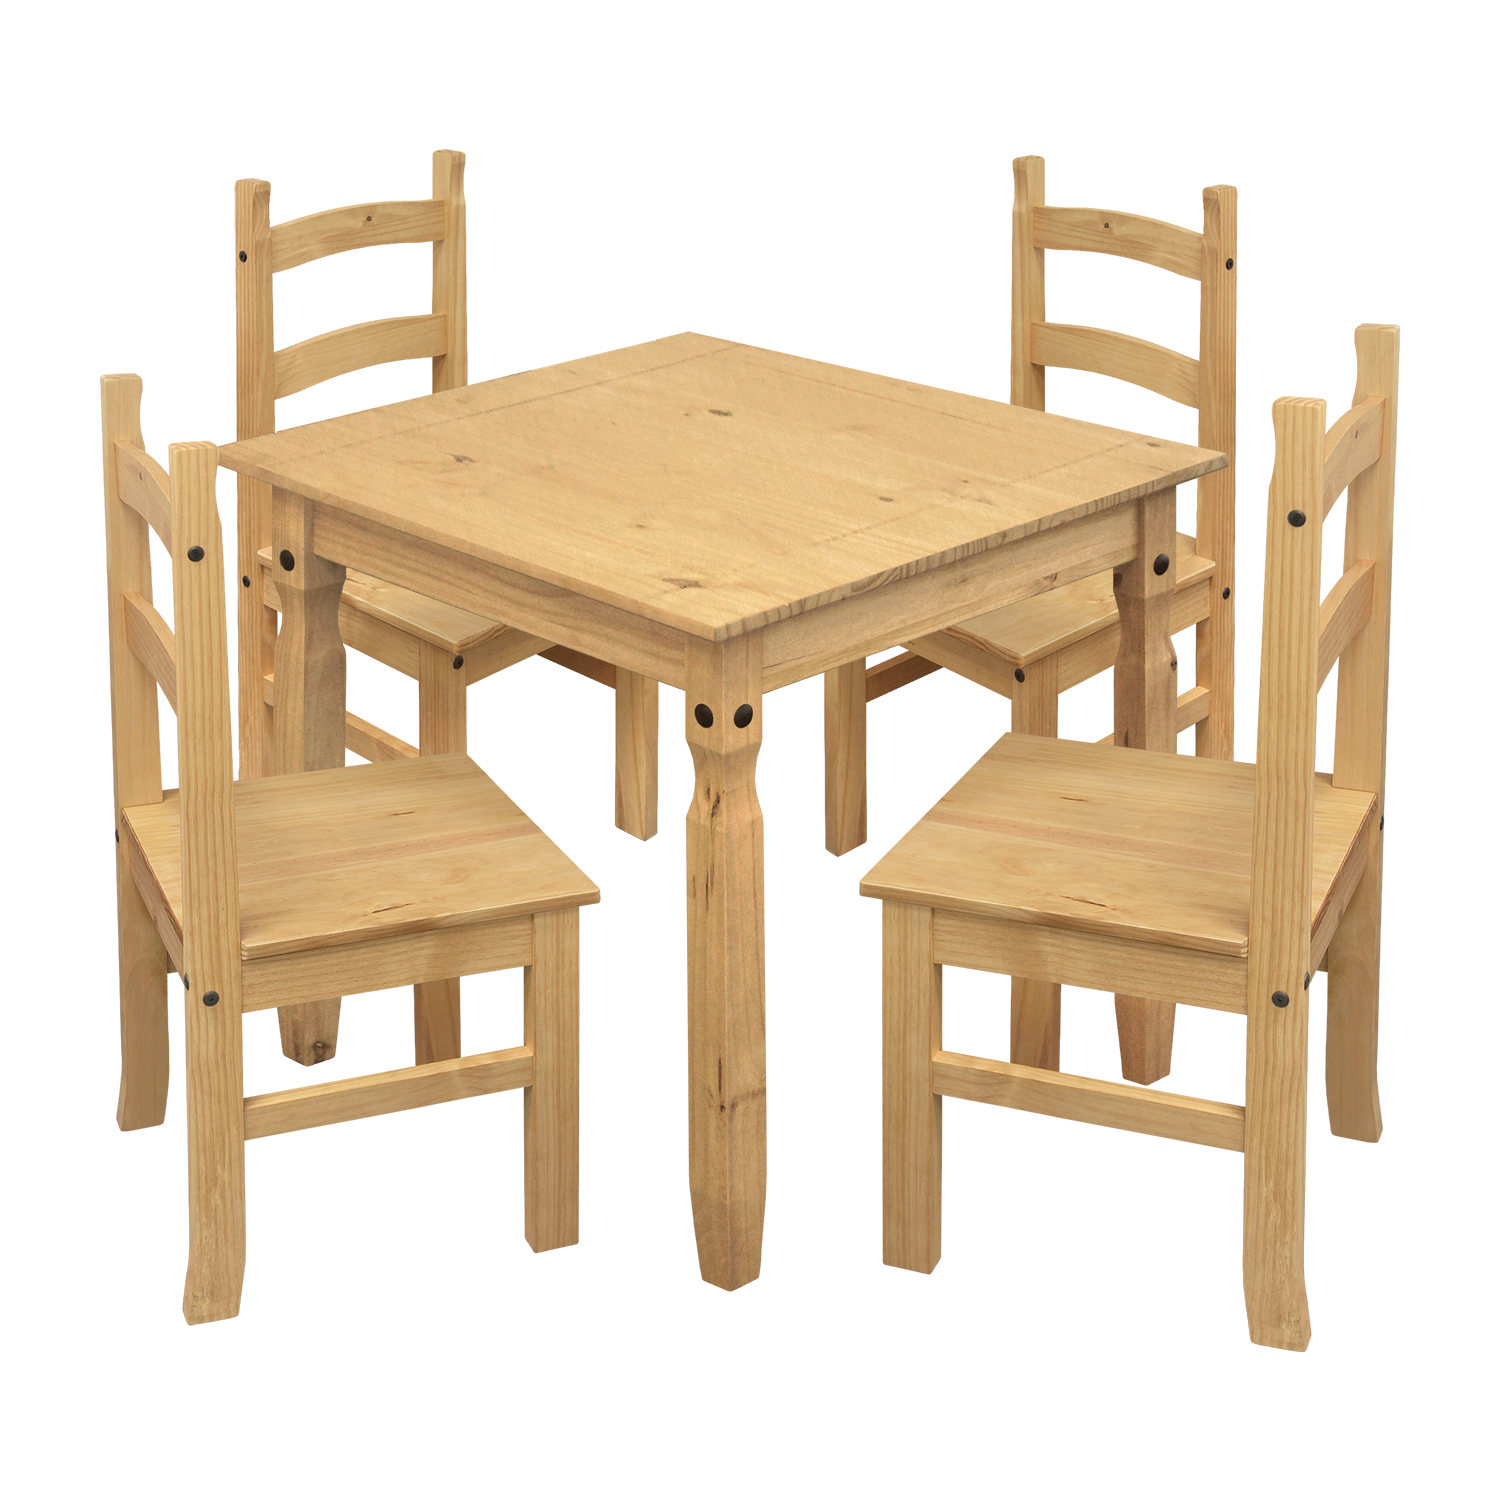 Jedálenský stôl 16117 + 4 stoličky 1627 CORONA 2